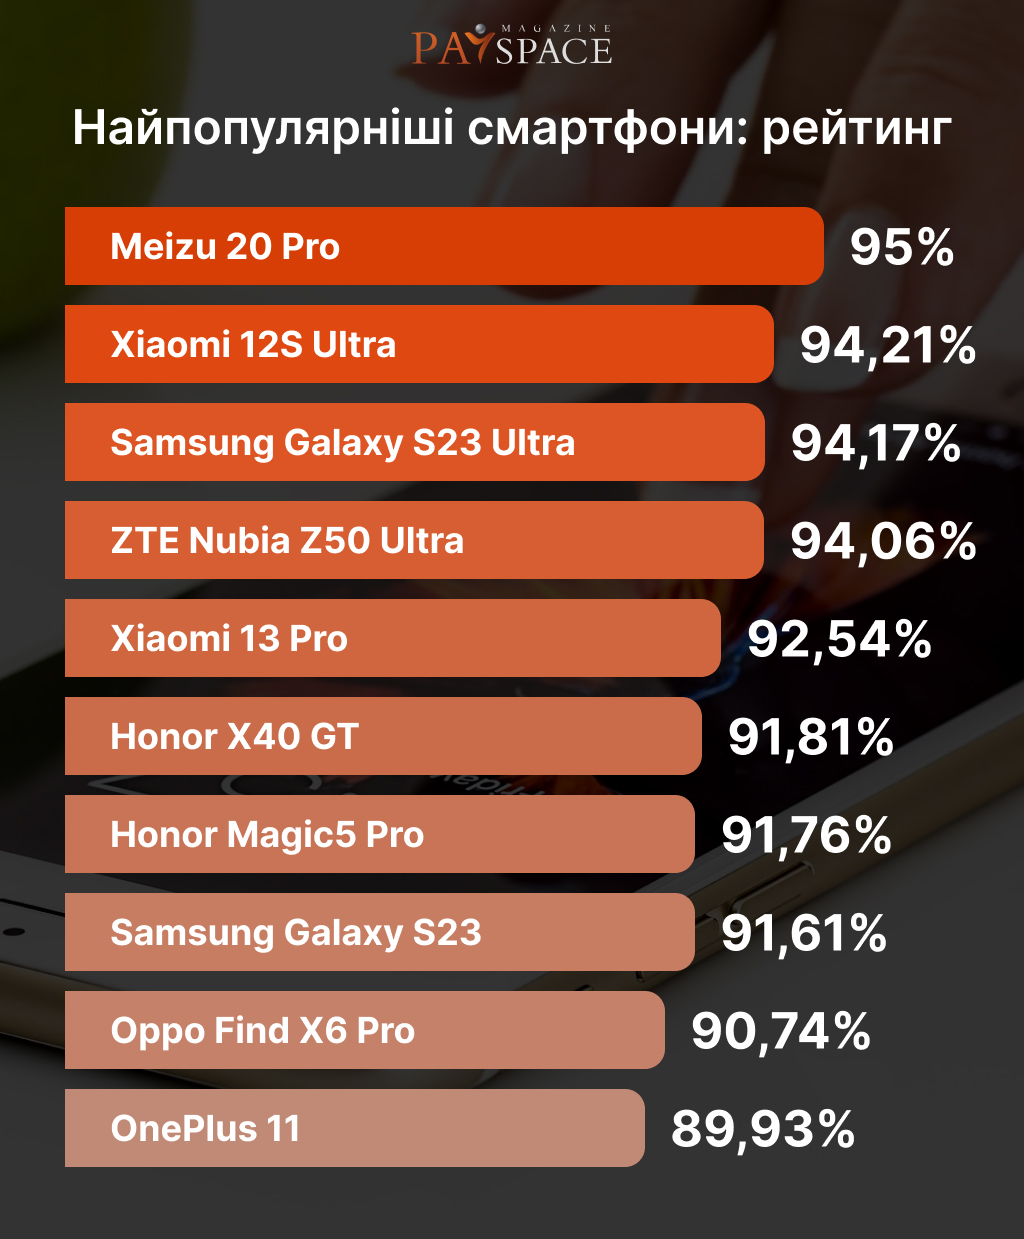 Самые популярные смартфоны: рейтинг